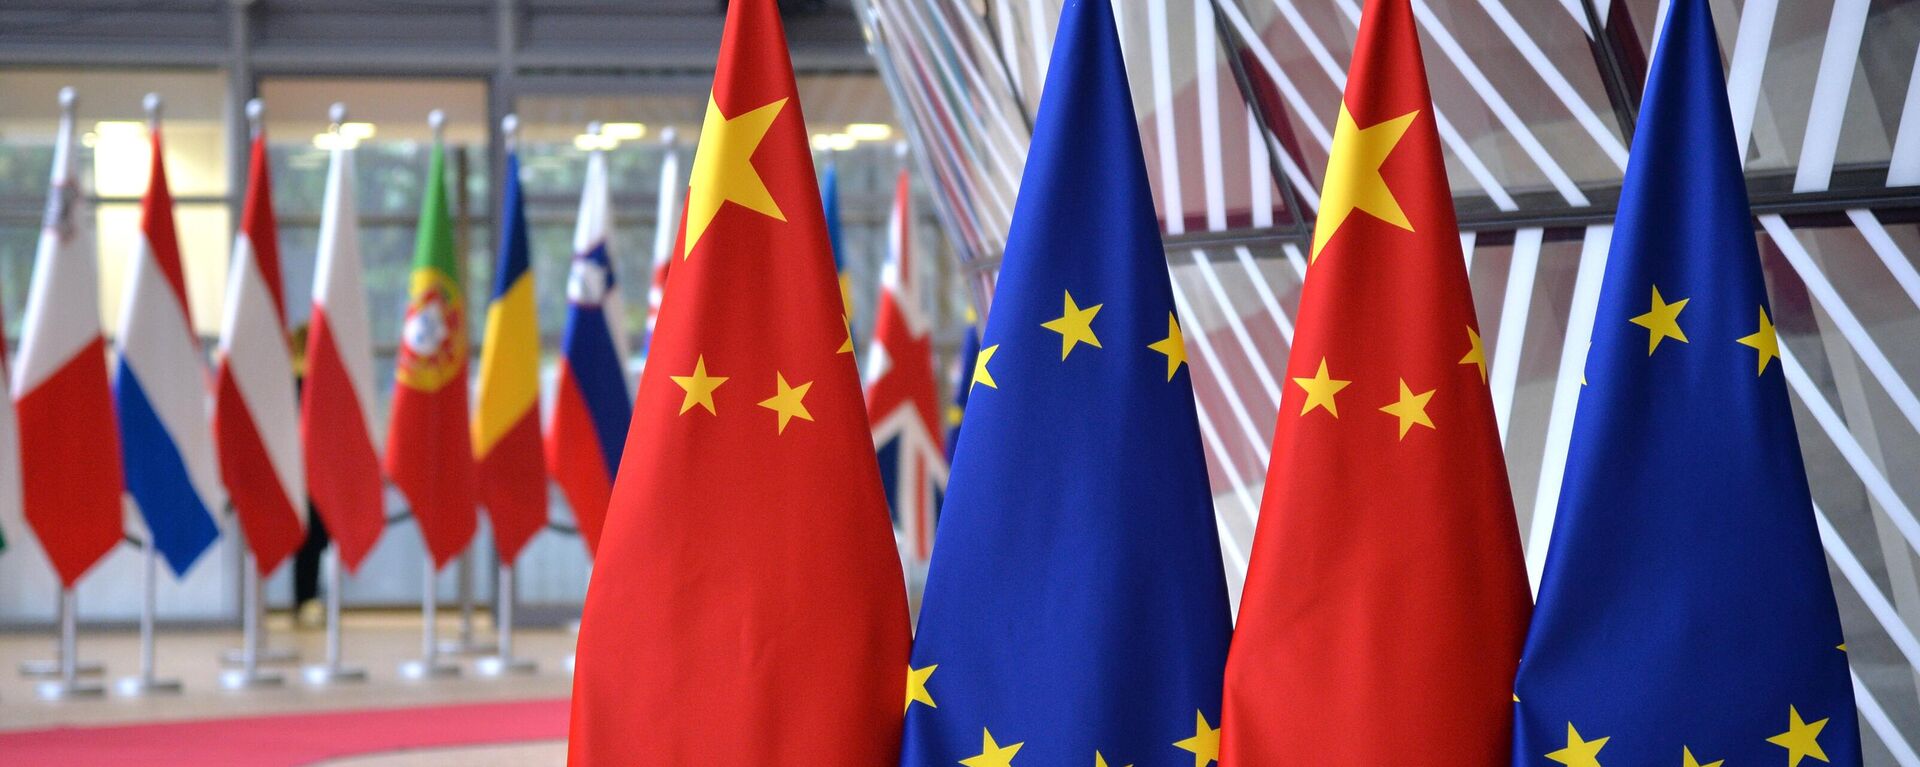 Cờ của Liên minh Châu Âu và cờ nhà nước của Cộng hòa Nhân dân Trung Hoa - Sputnik Việt Nam, 1920, 06.03.2023